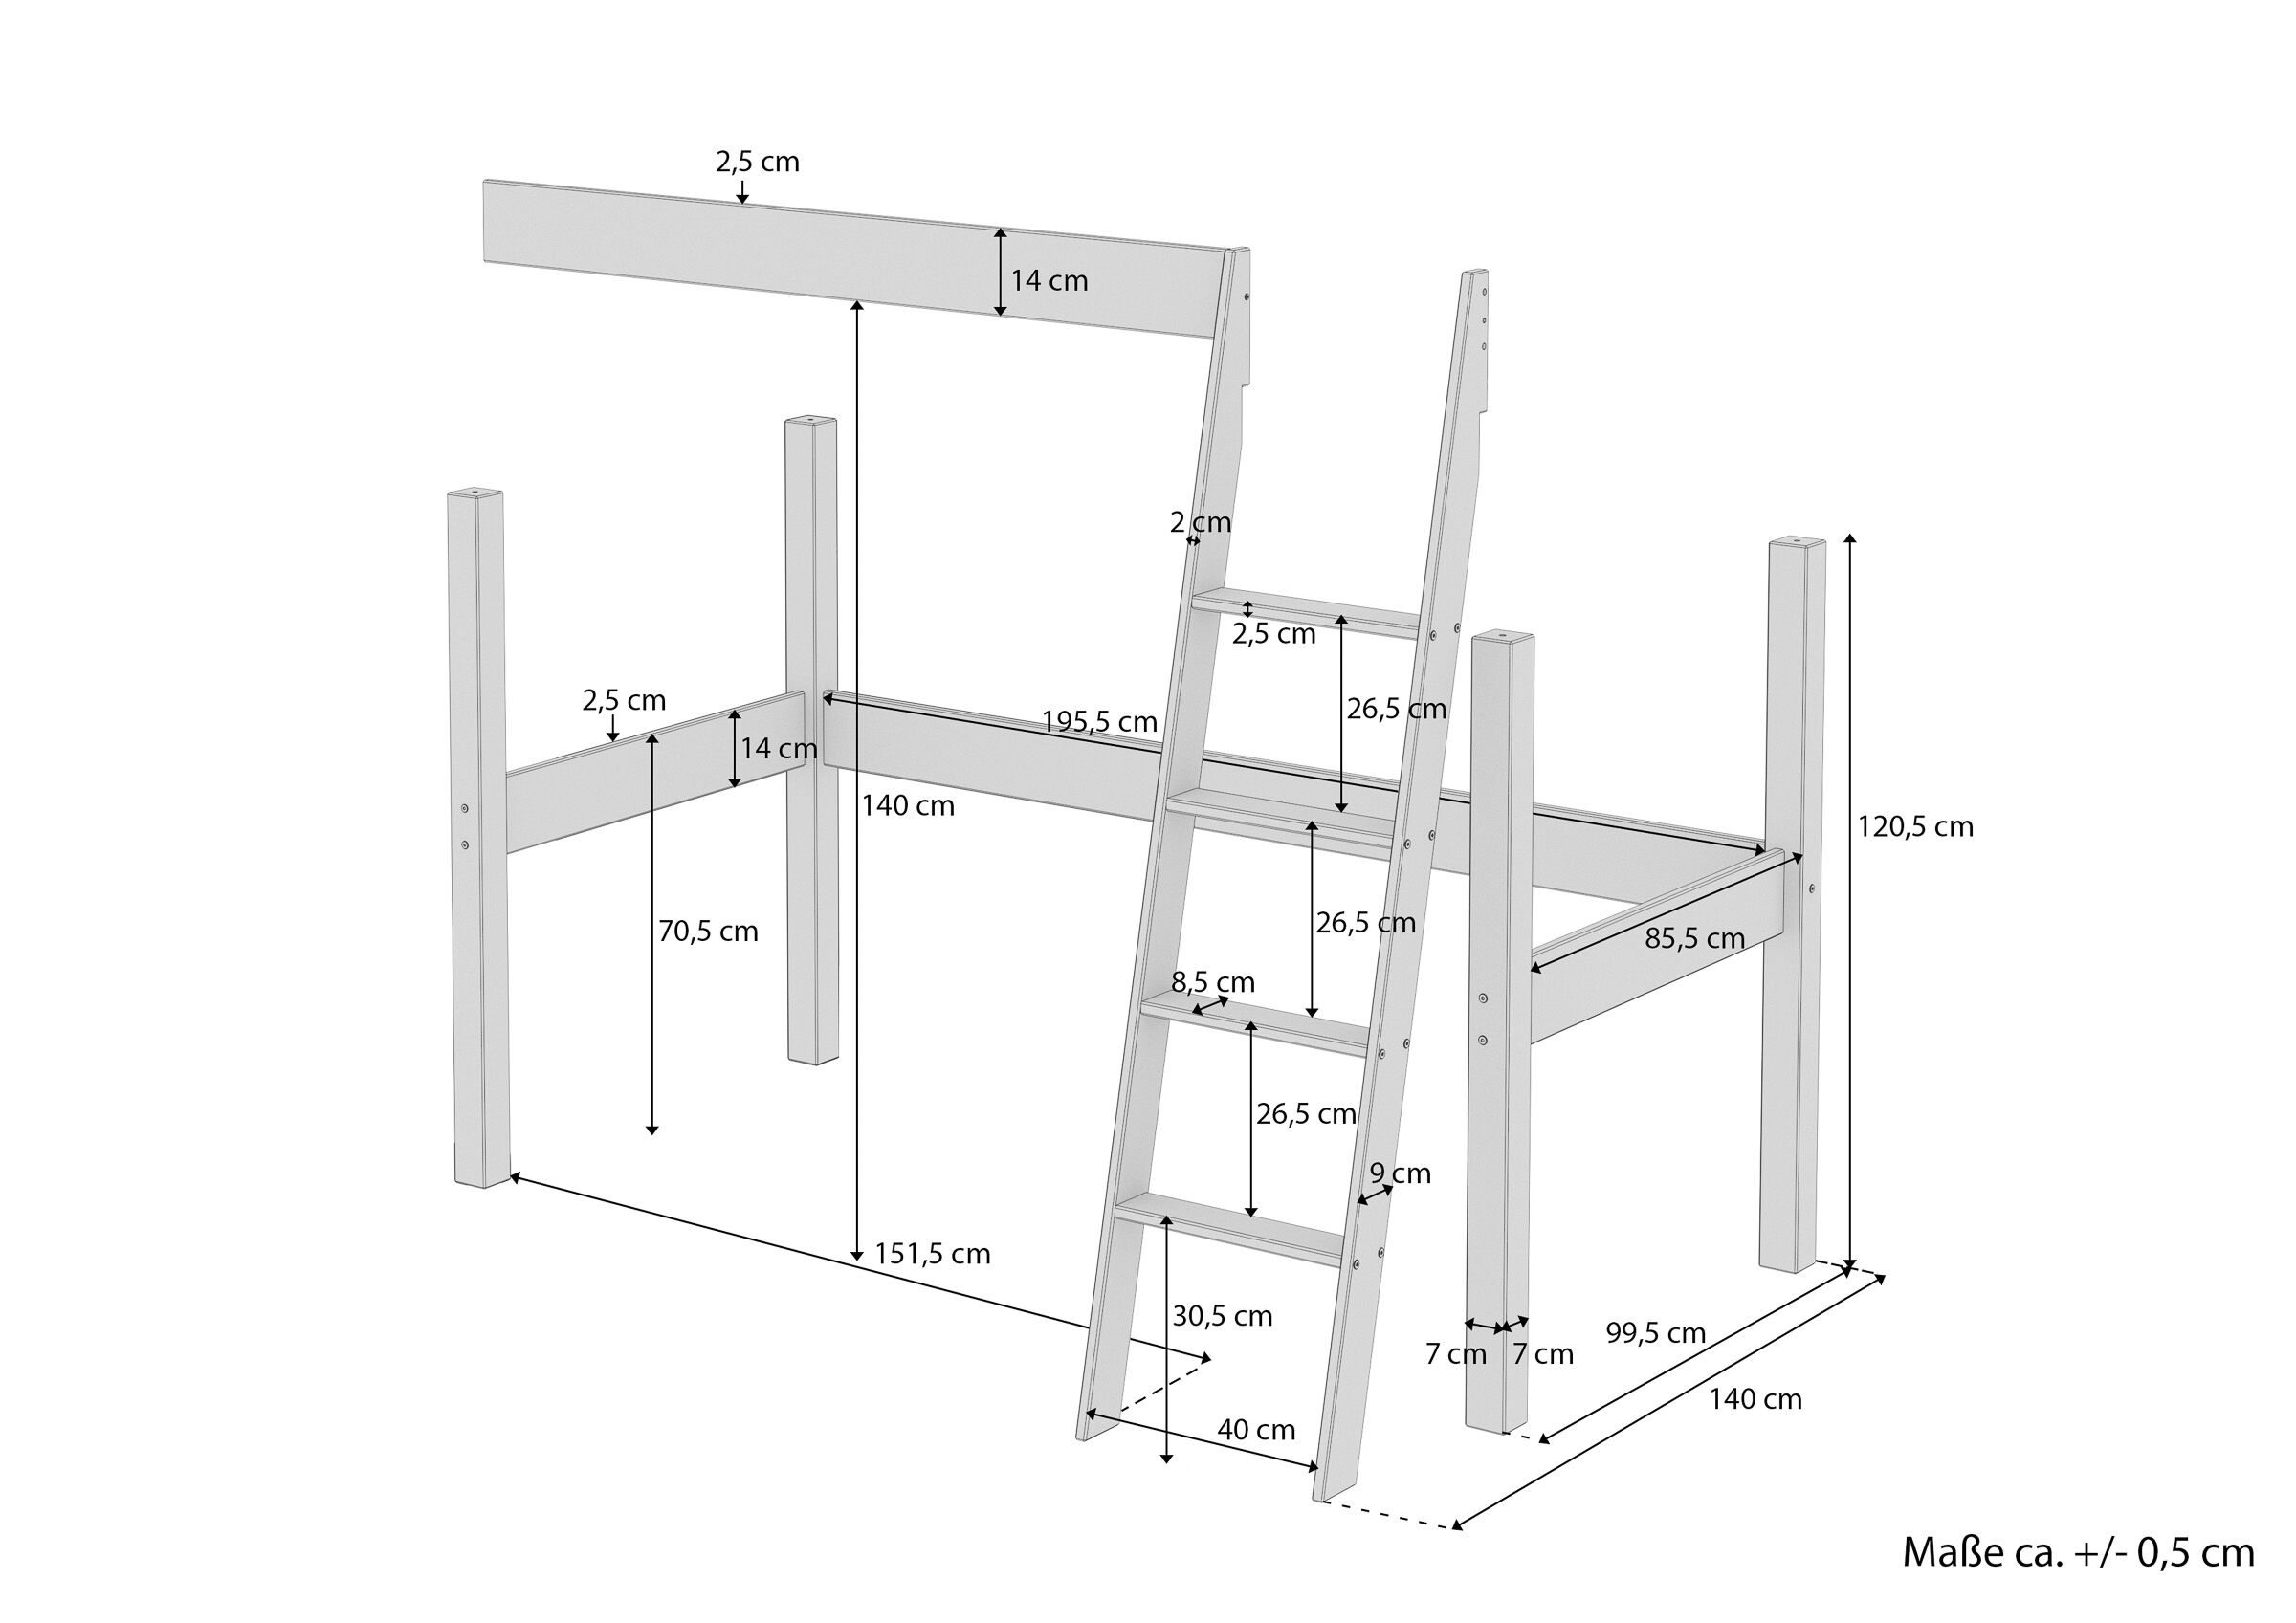 Zubehör für Einzelbett zur Erweiterung zum Hochbett Pfosten Leiter, Sicherung  V-60.20Z-09 